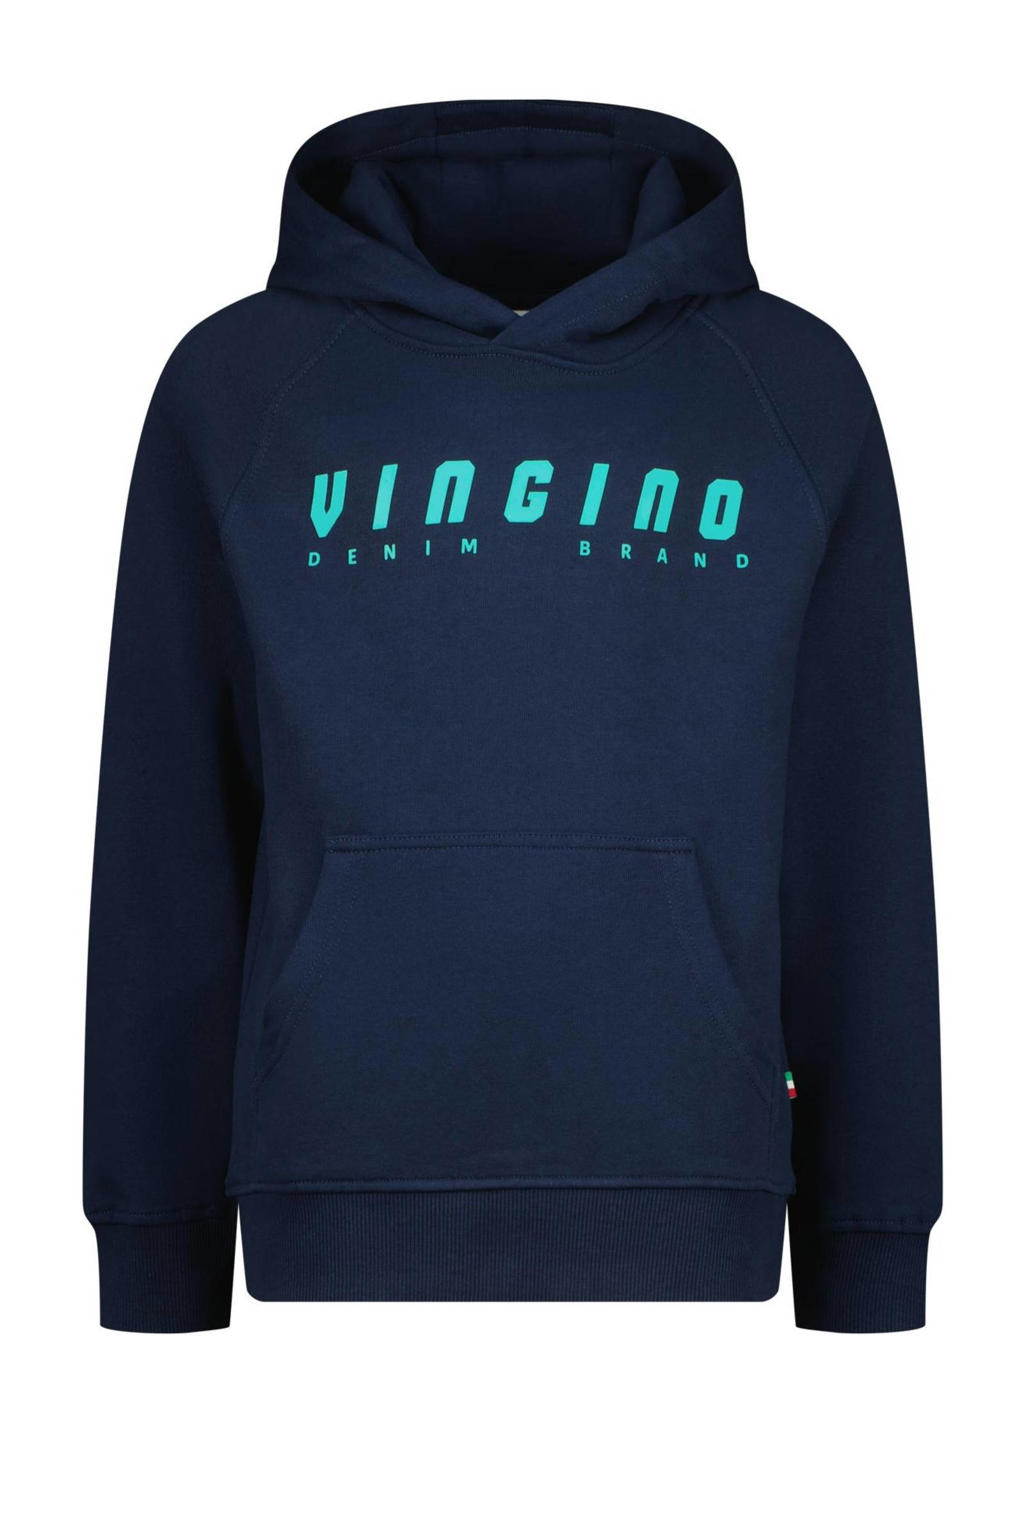 Blauwe jongens Vingino hoodie van sweat materiaal met logo dessin, lange mouwen en capuchon